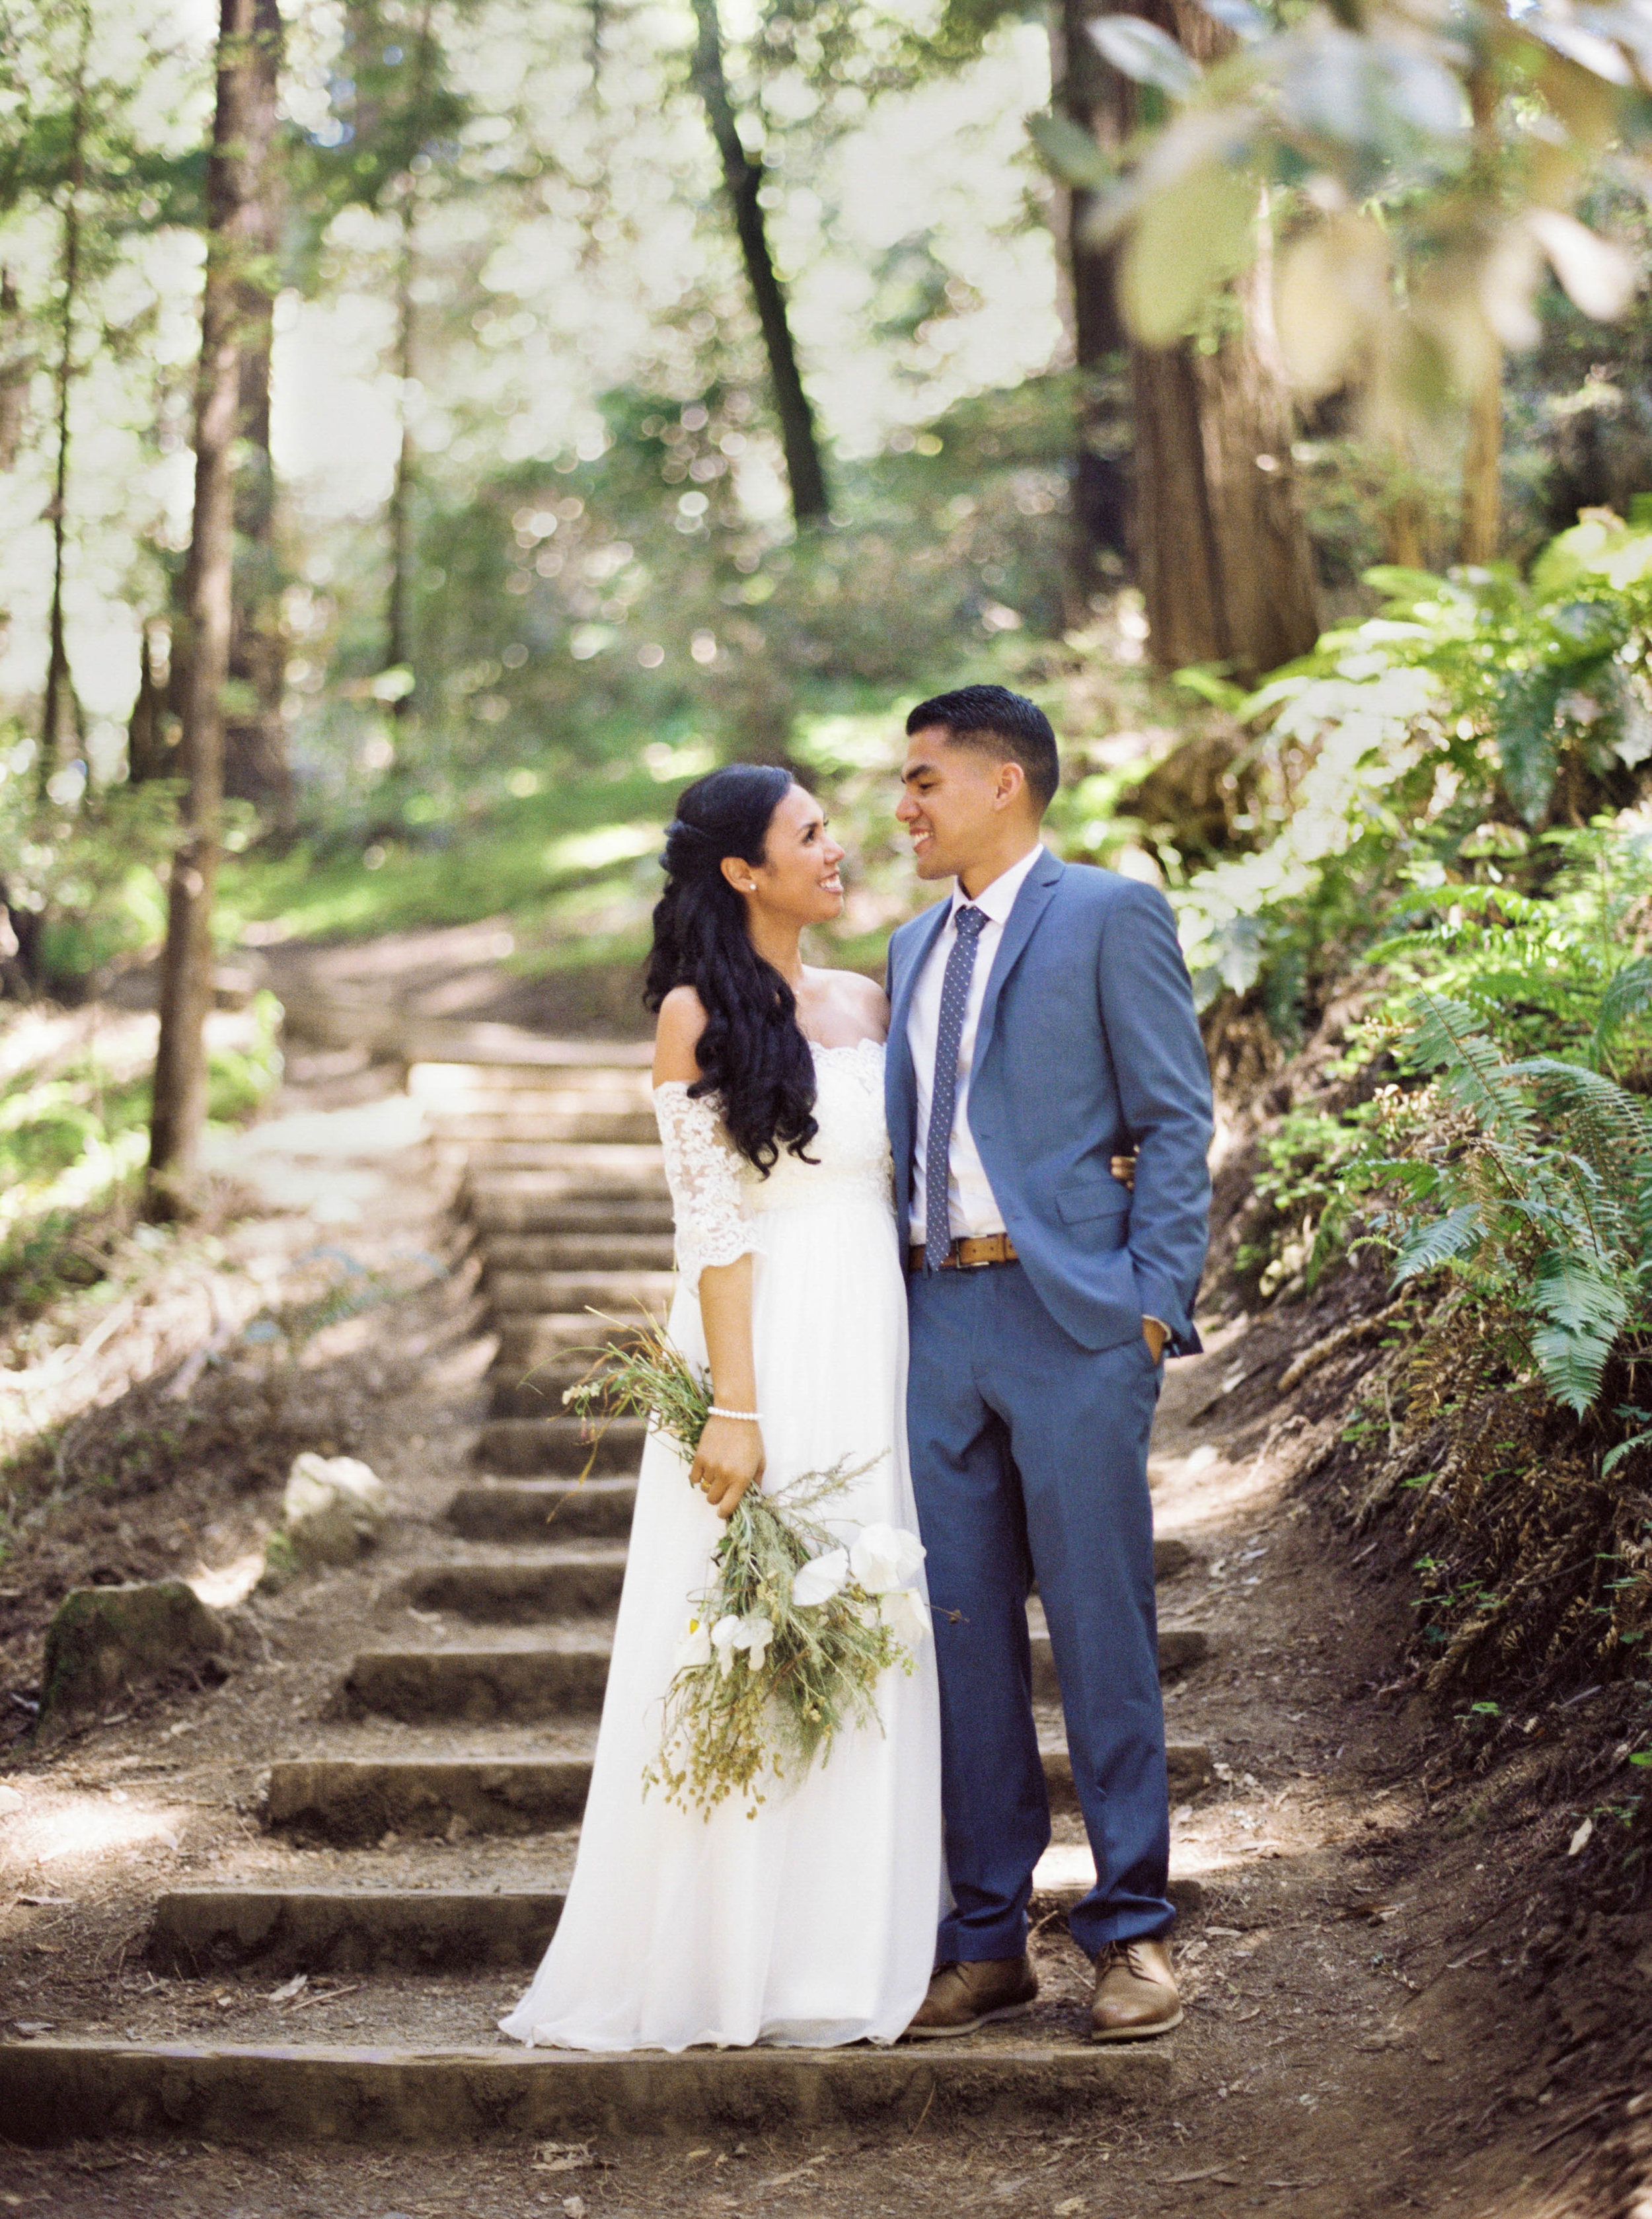 012_Krysten-Crebin-Muir-Woods-Elopement-Wedding-Photographer.jpg